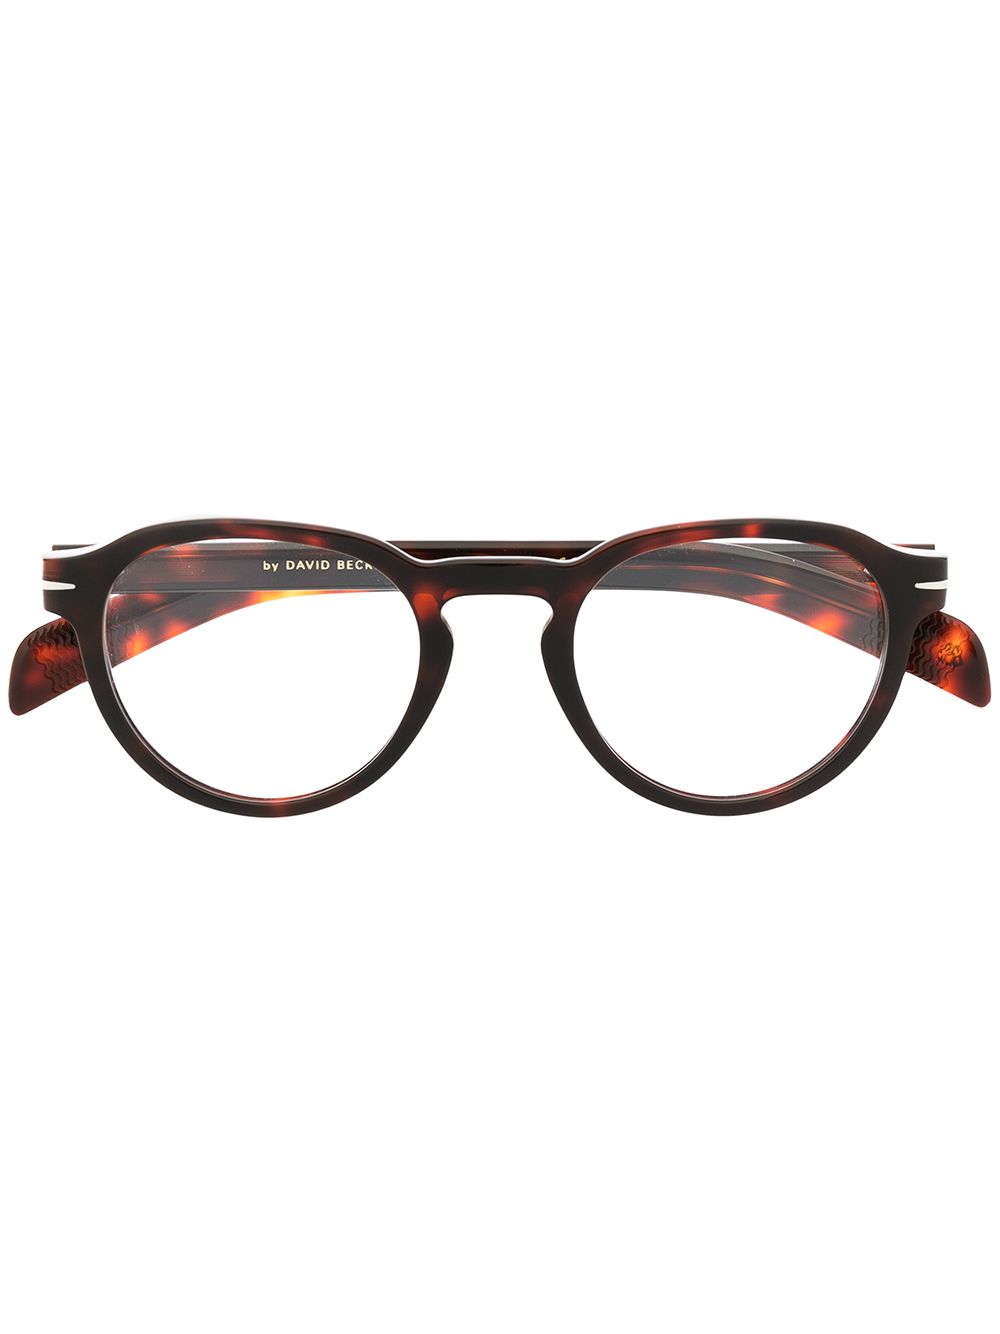 фото Eyewear by david beckham очки в оправе черепаховой расцветки